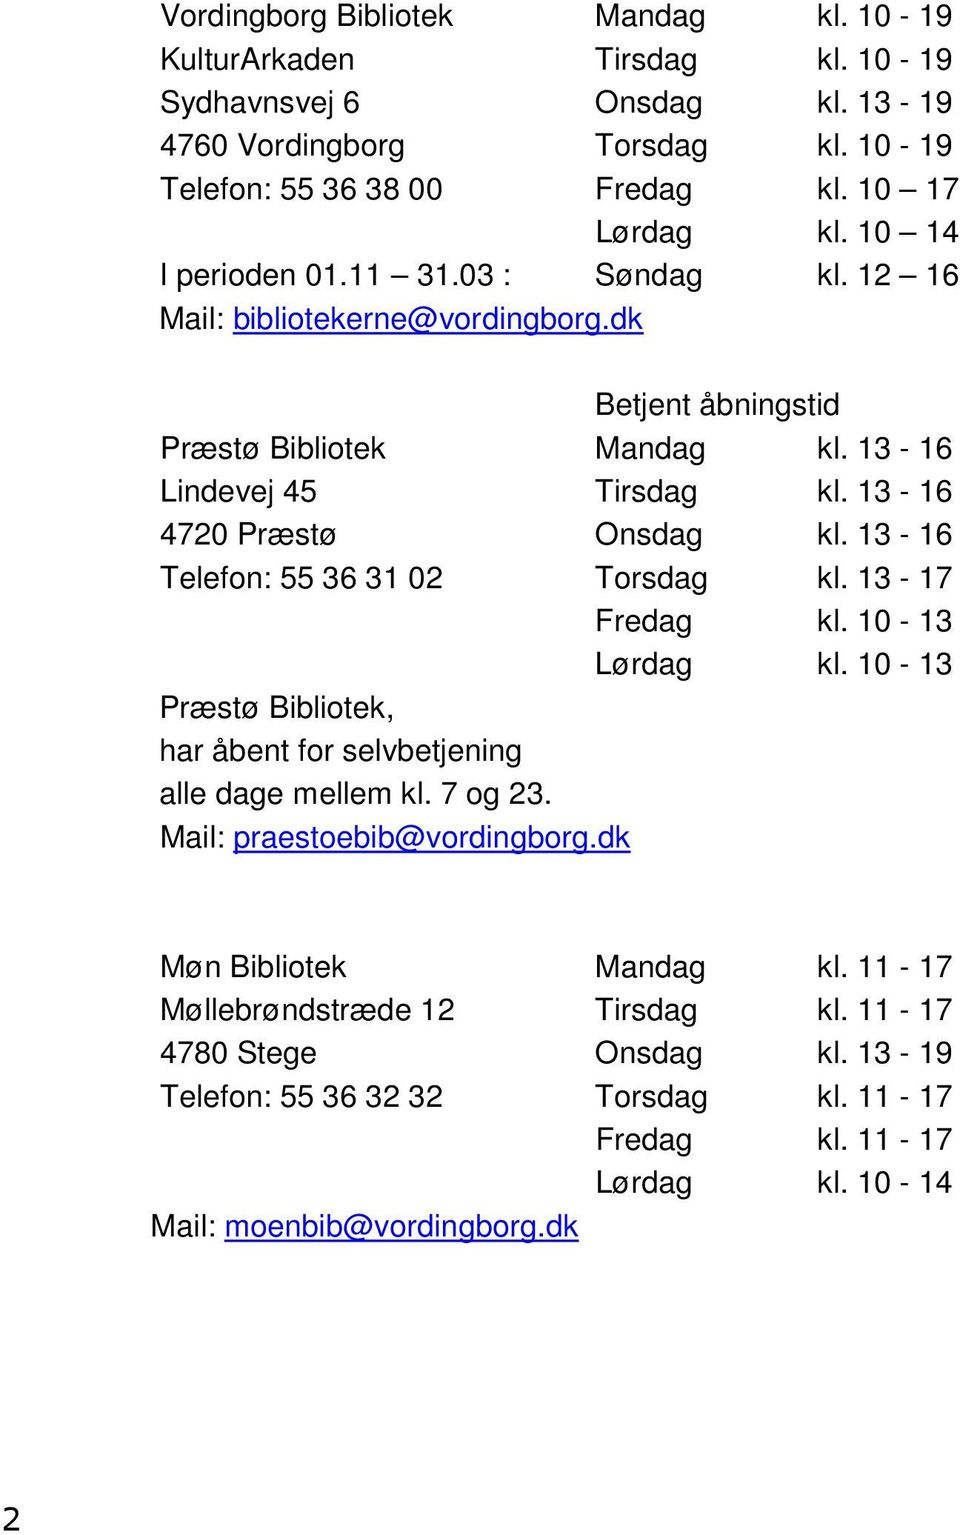 13-16 Telefon: 55 36 31 02 Torsdag kl. 13-17 Fredag kl. 10-13 Lørdag kl. 10-13 Præstø Bibliotek, har åbent for selvbetjening alle dage mellem kl. 7 og 23. Mail: praestoebib@vordingborg.